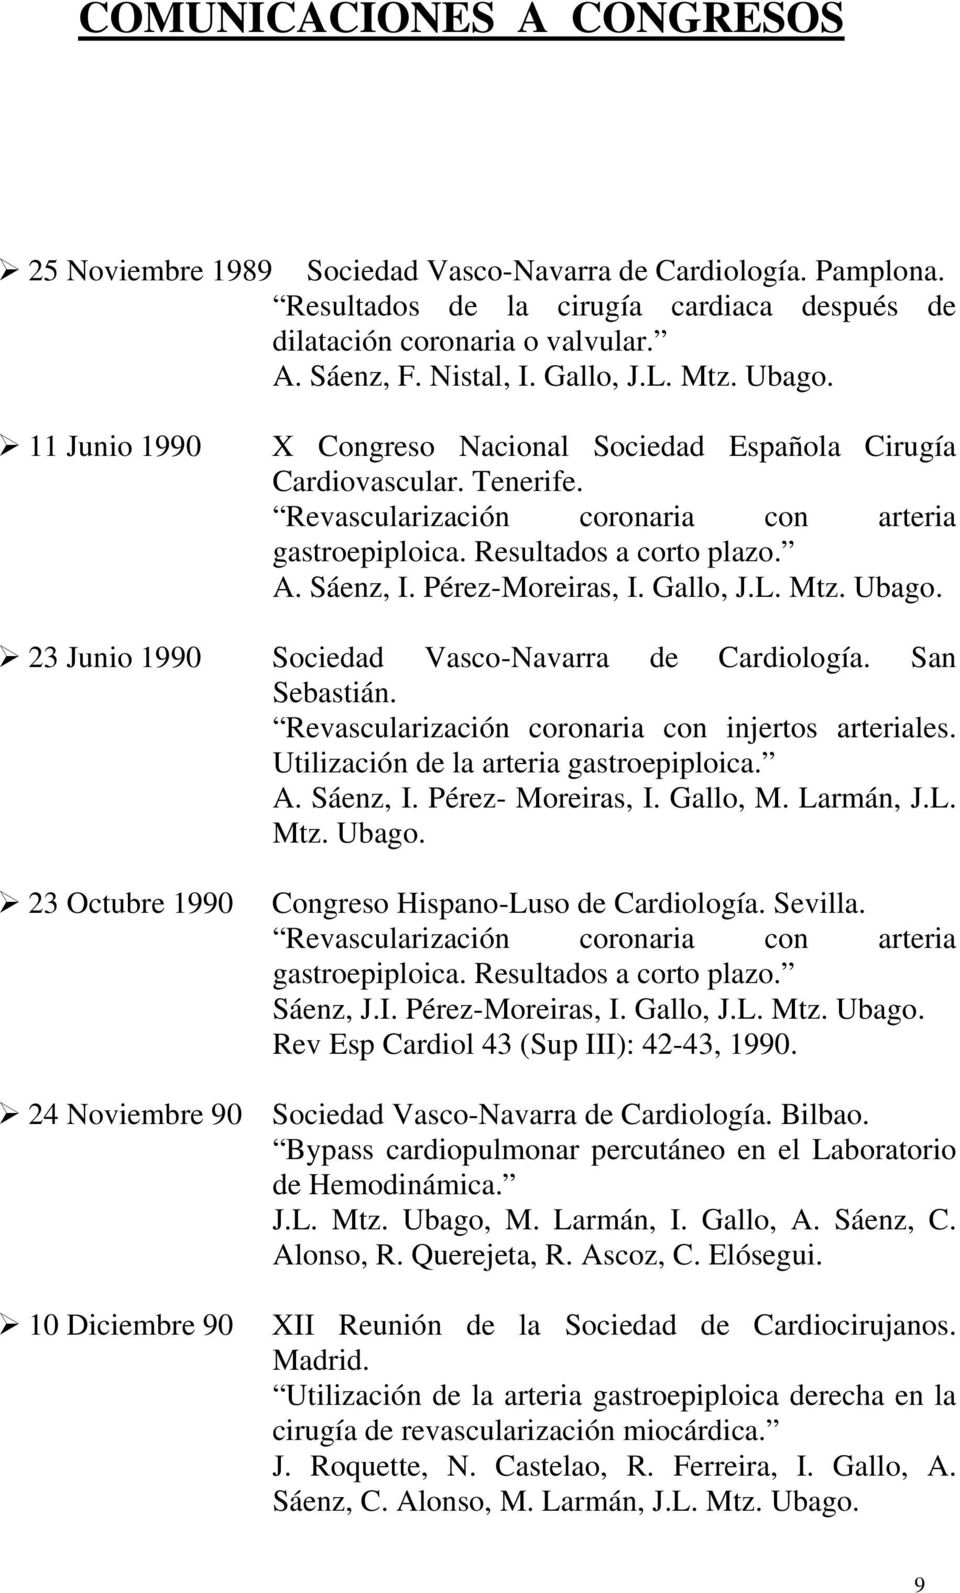 Sáenz, I. Pérez-Moreiras, I. Gallo, J.L. Mtz. Ubago. 23 Junio 1990 Sociedad Vasco-Navarra de Cardiología. San Sebastián. Revascularización coronaria con injertos arteriales.